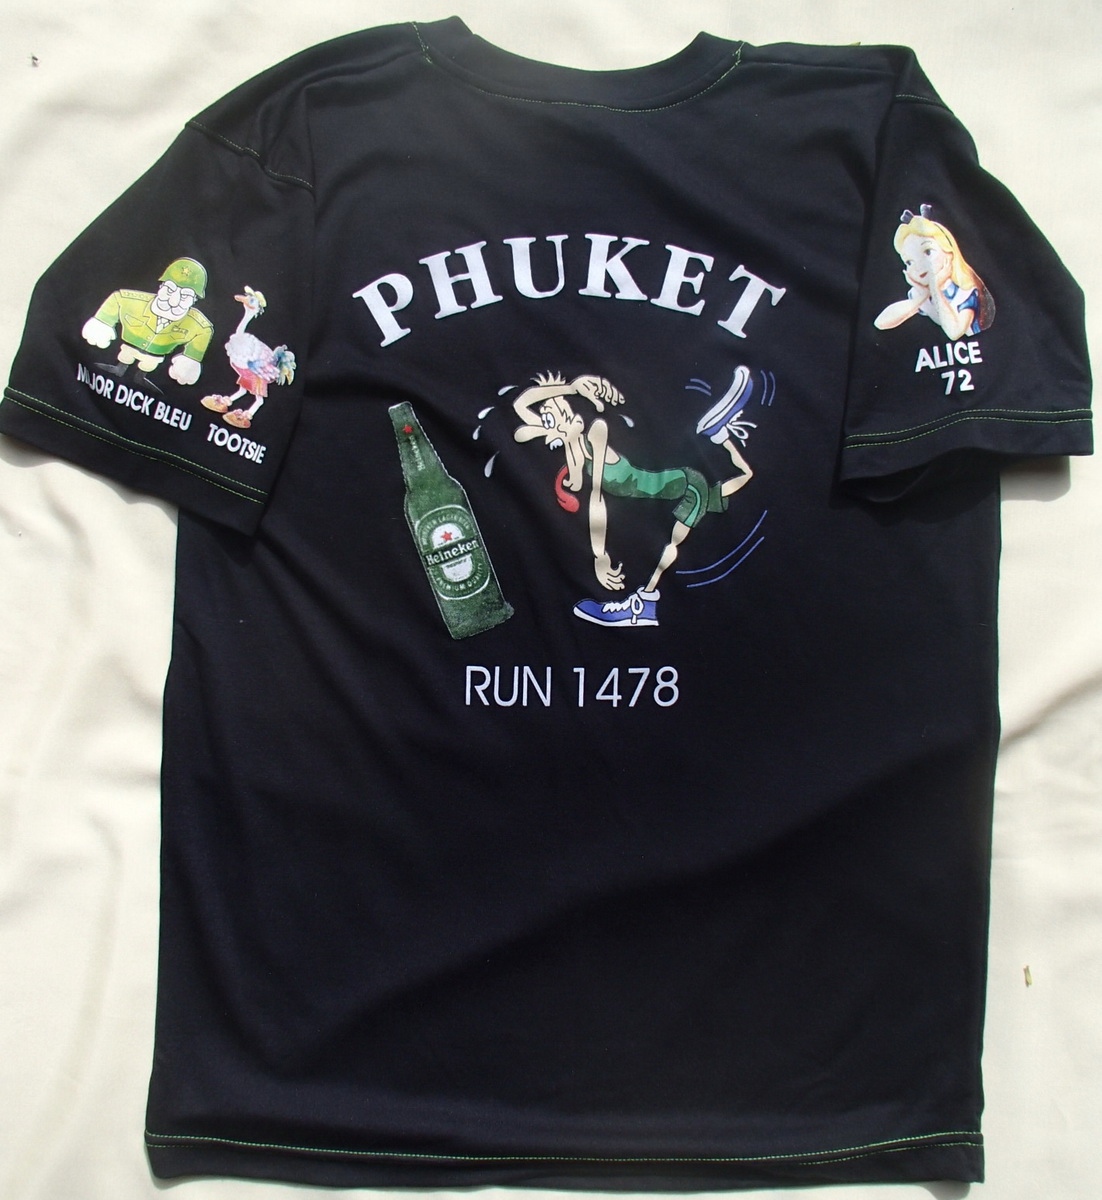 Phuket HHH Run #1478